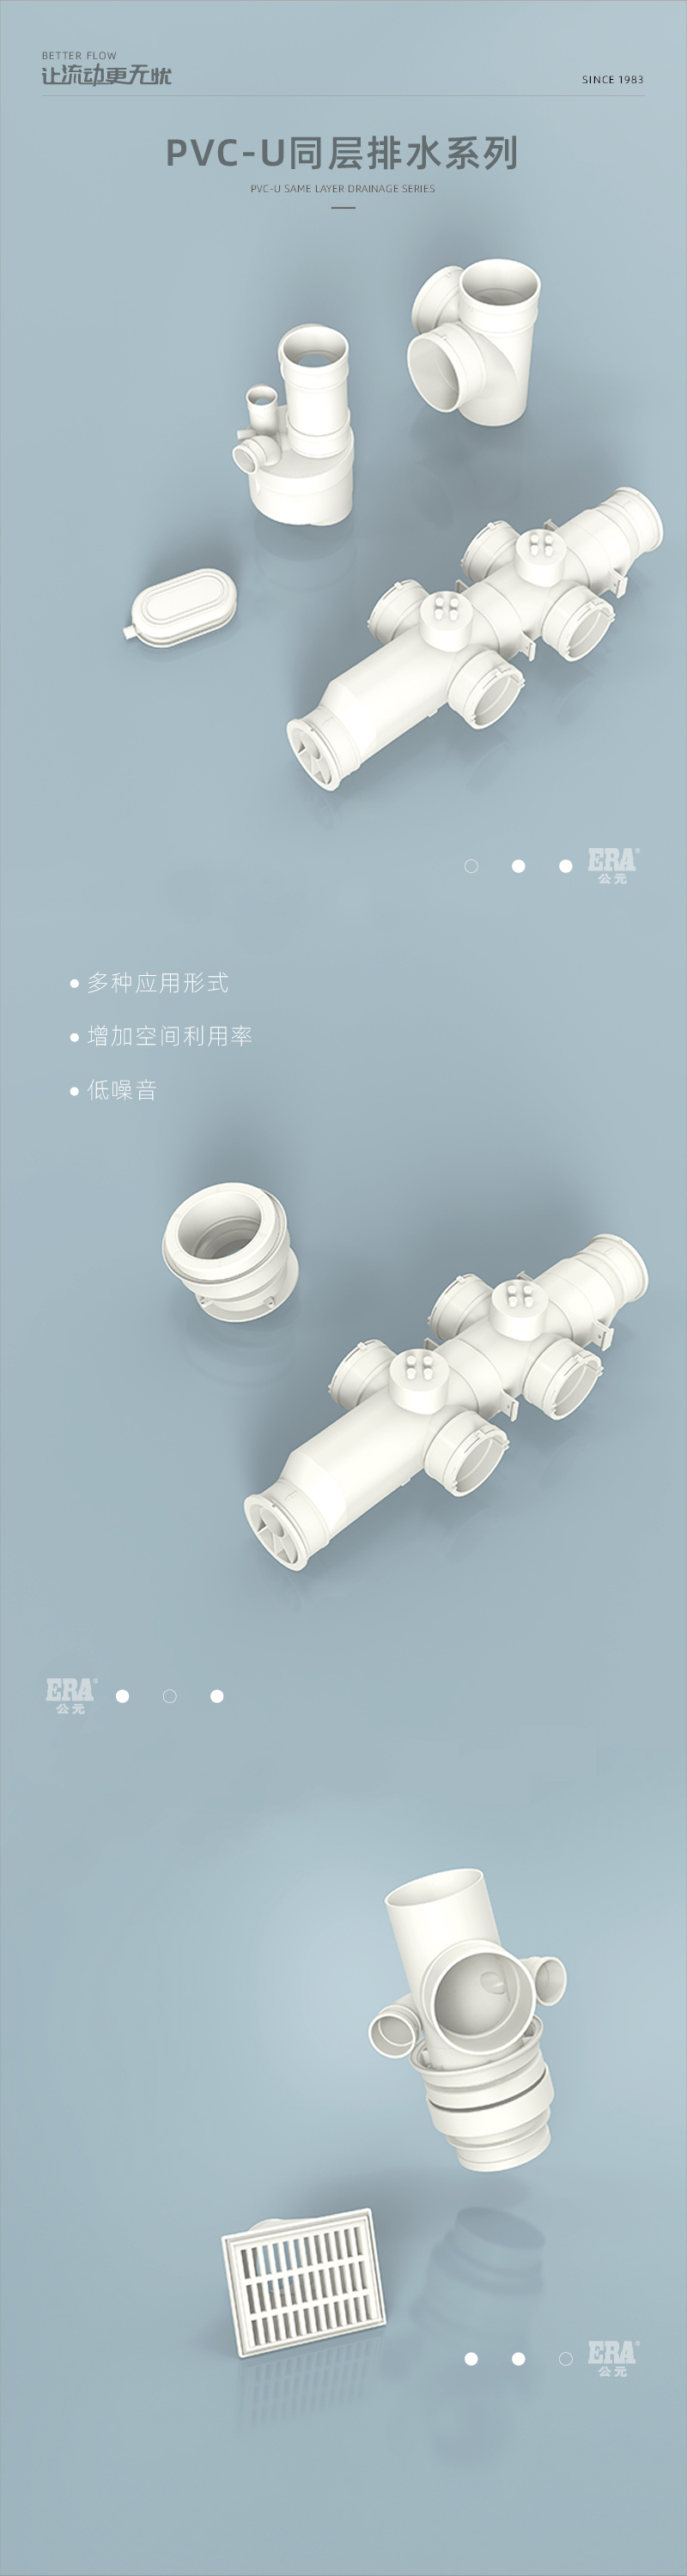 PVC-U同层排水系列-01.jpg